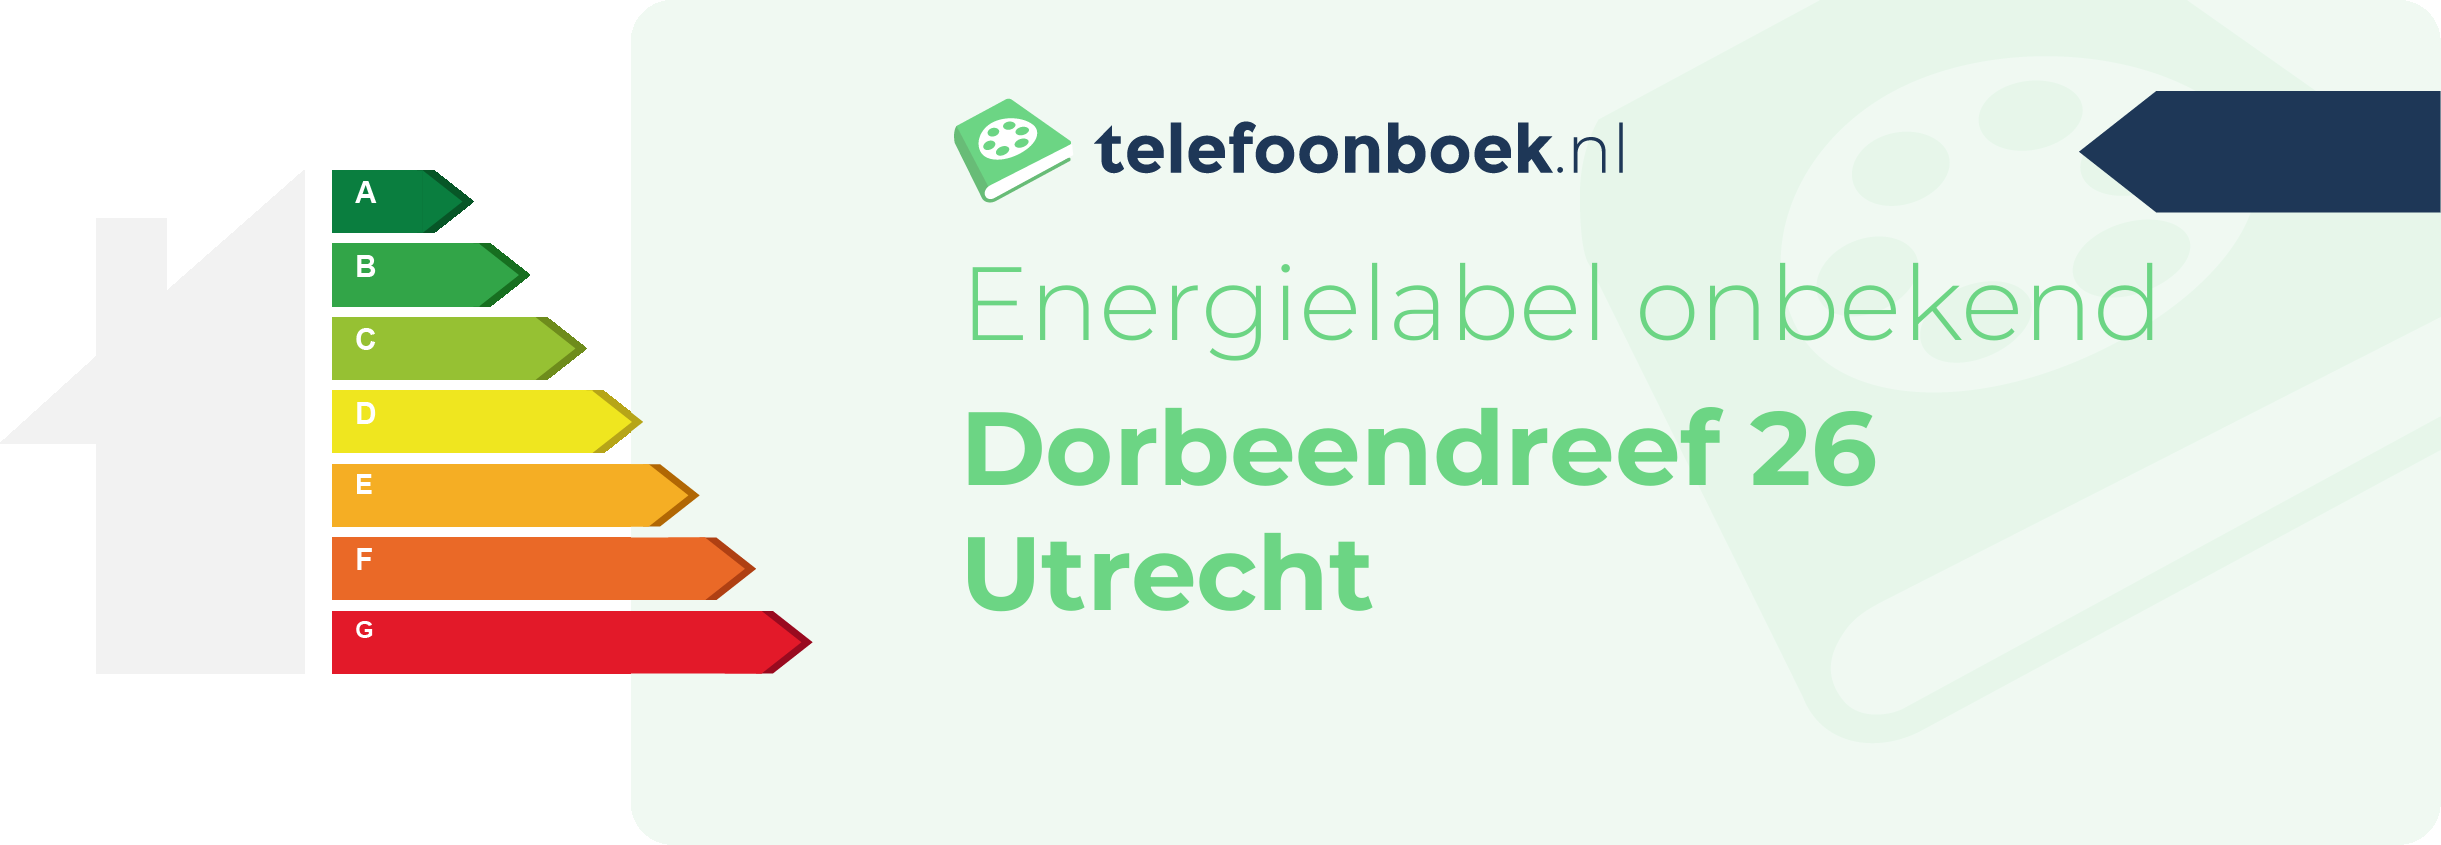 Energielabel Dorbeendreef 26 Utrecht